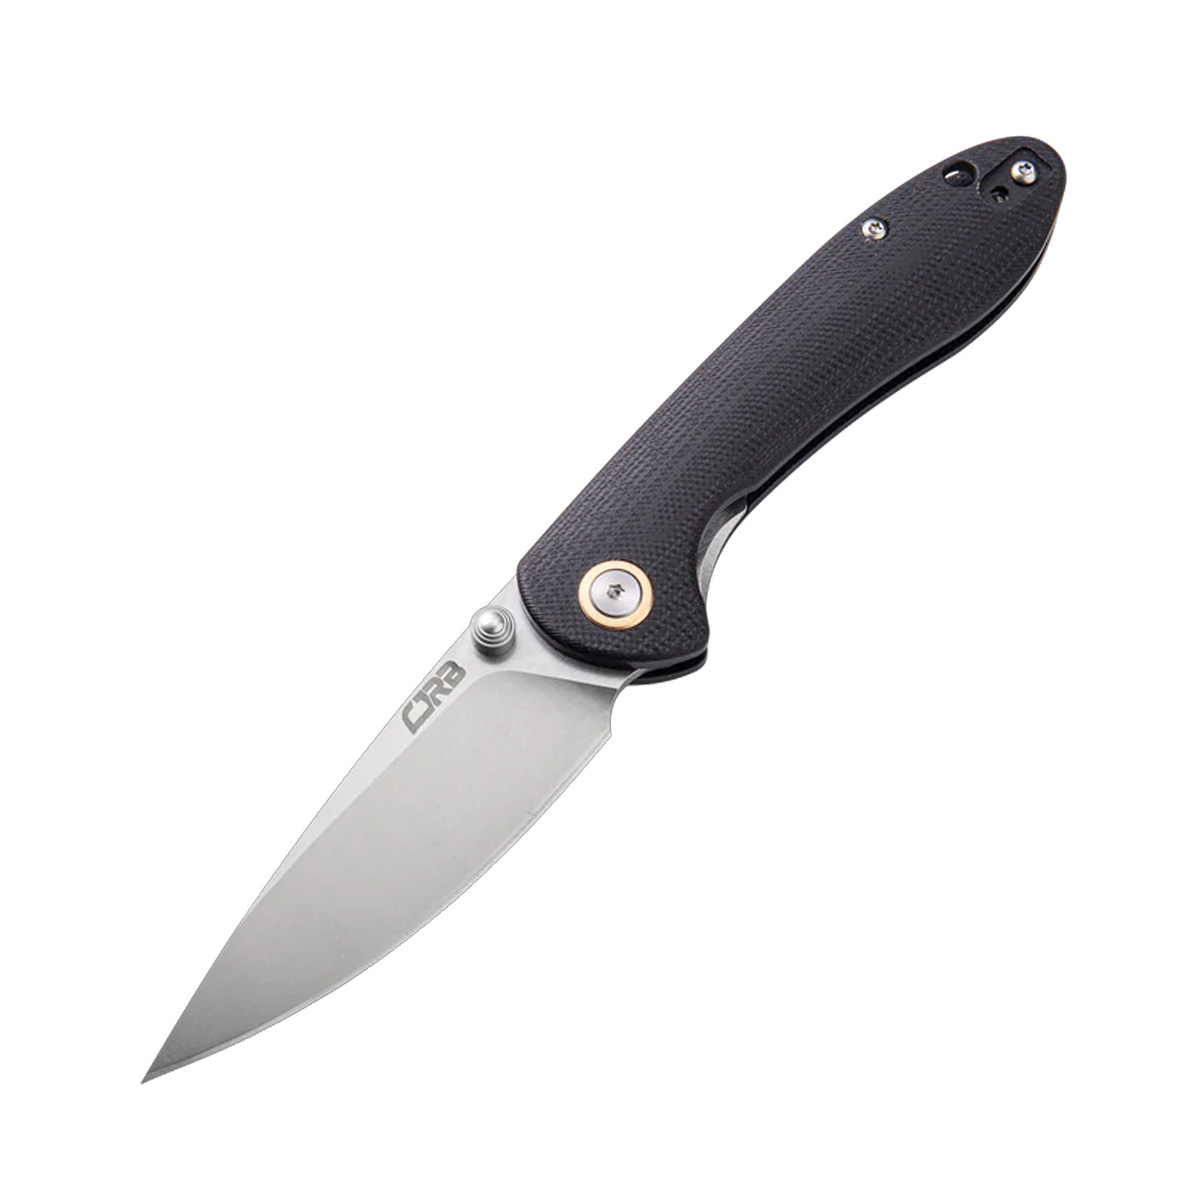 Складной нож CJRB Small Feldspar, сталь D2, рукоять G10, черный, Бренды, CJRB Cutlery